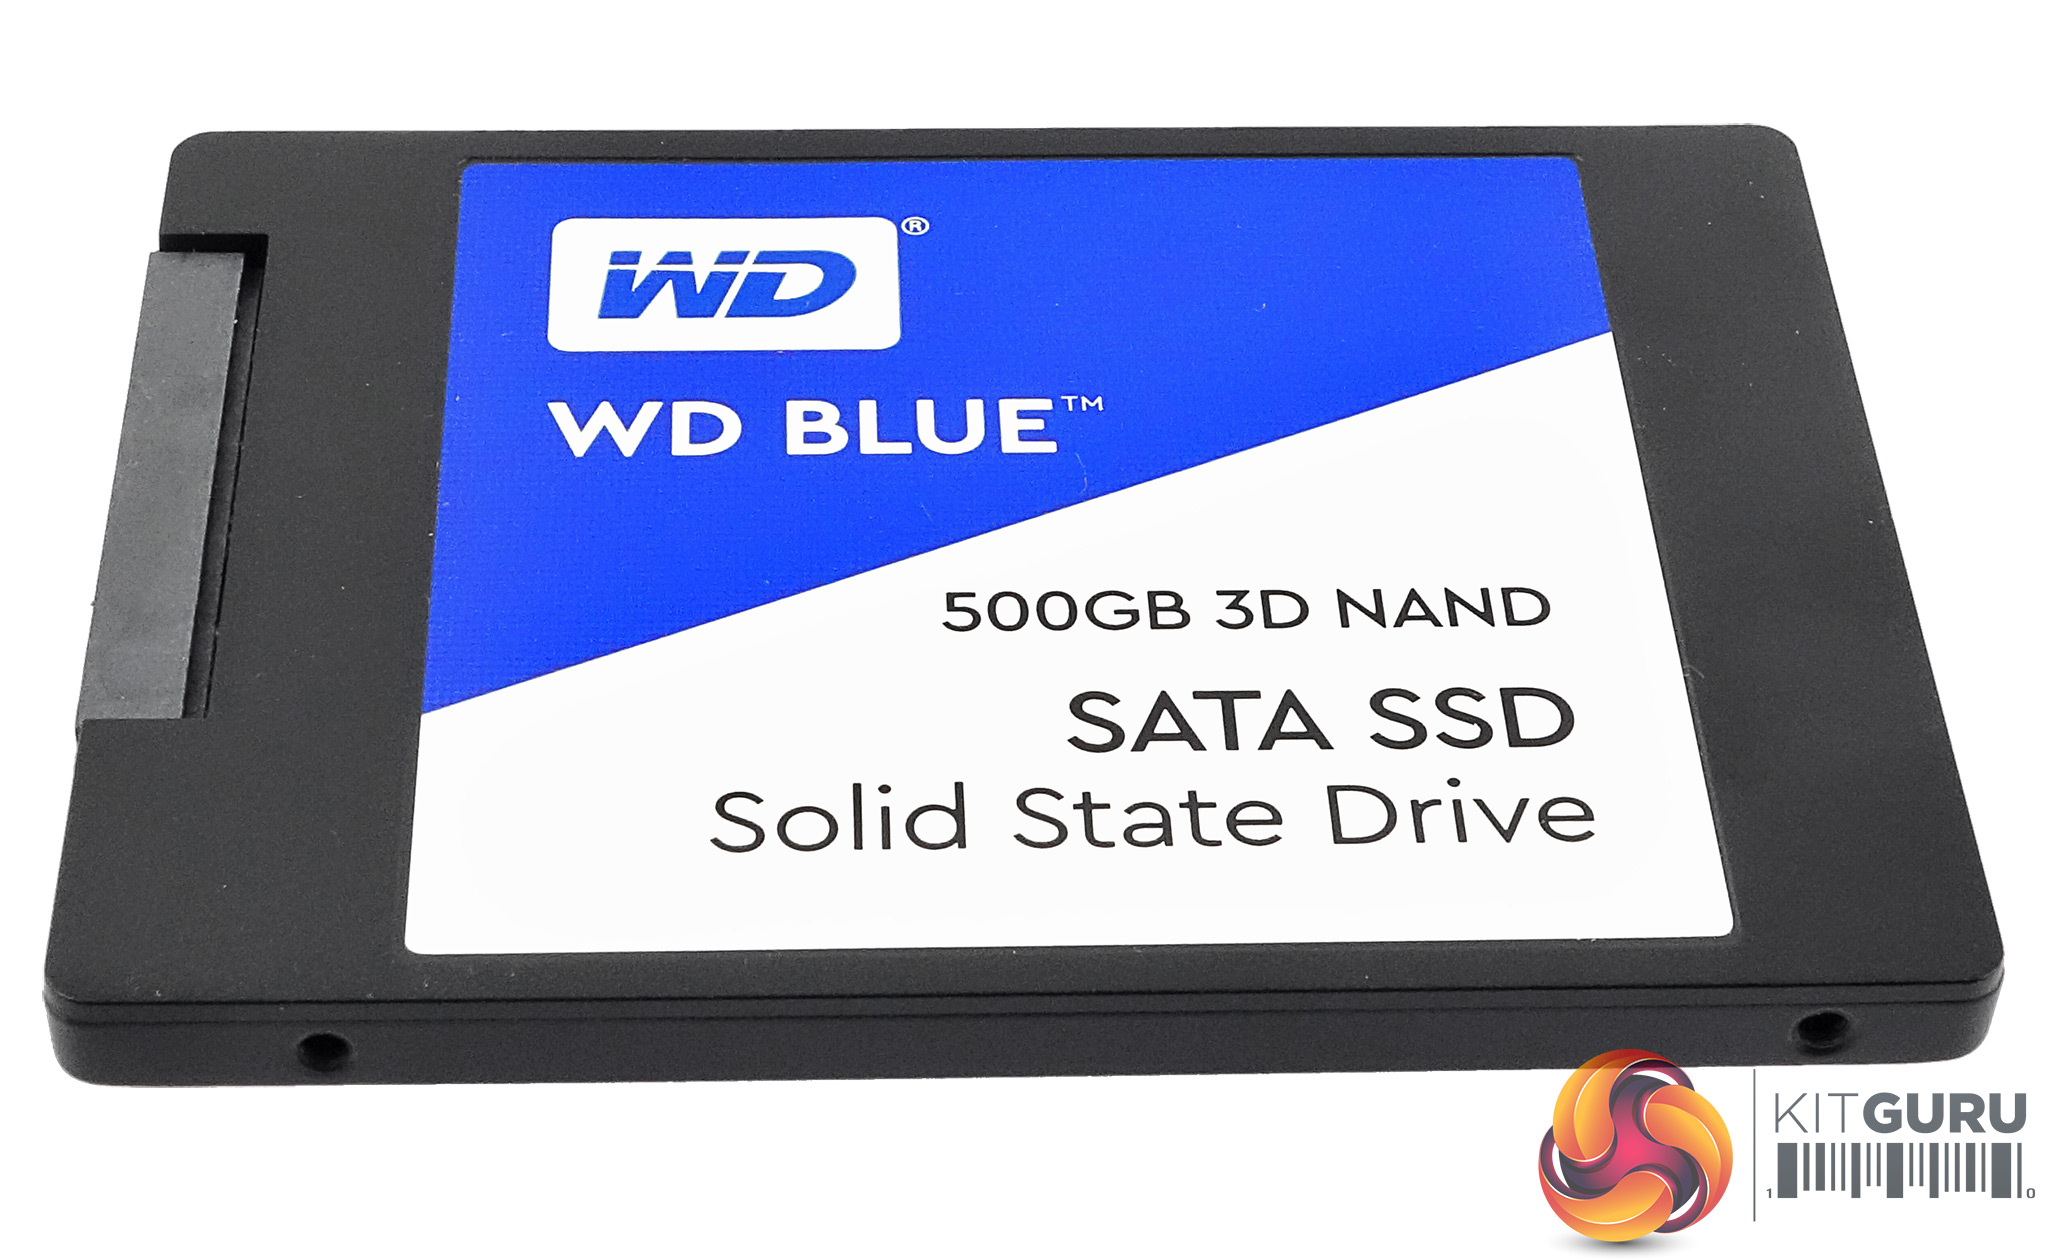 WD Blue 3D NAND 500GB SSD Review | KitGuru